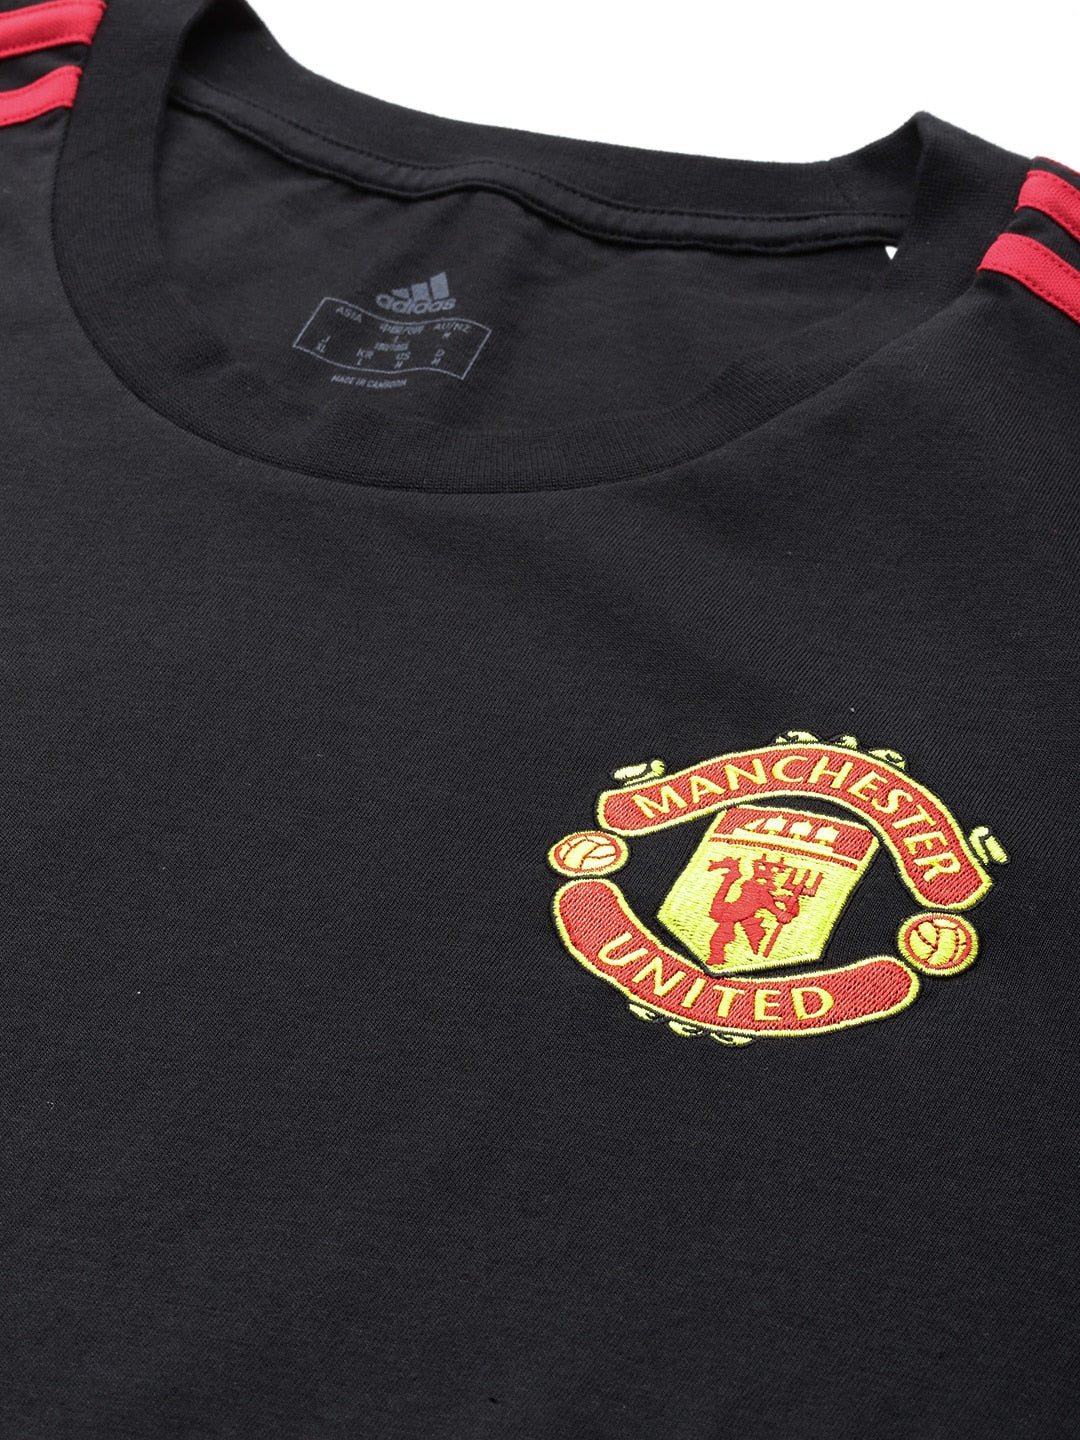 Adidas Men Manchester United FC DNA Pure Cotton Football T-shirt - Distacart